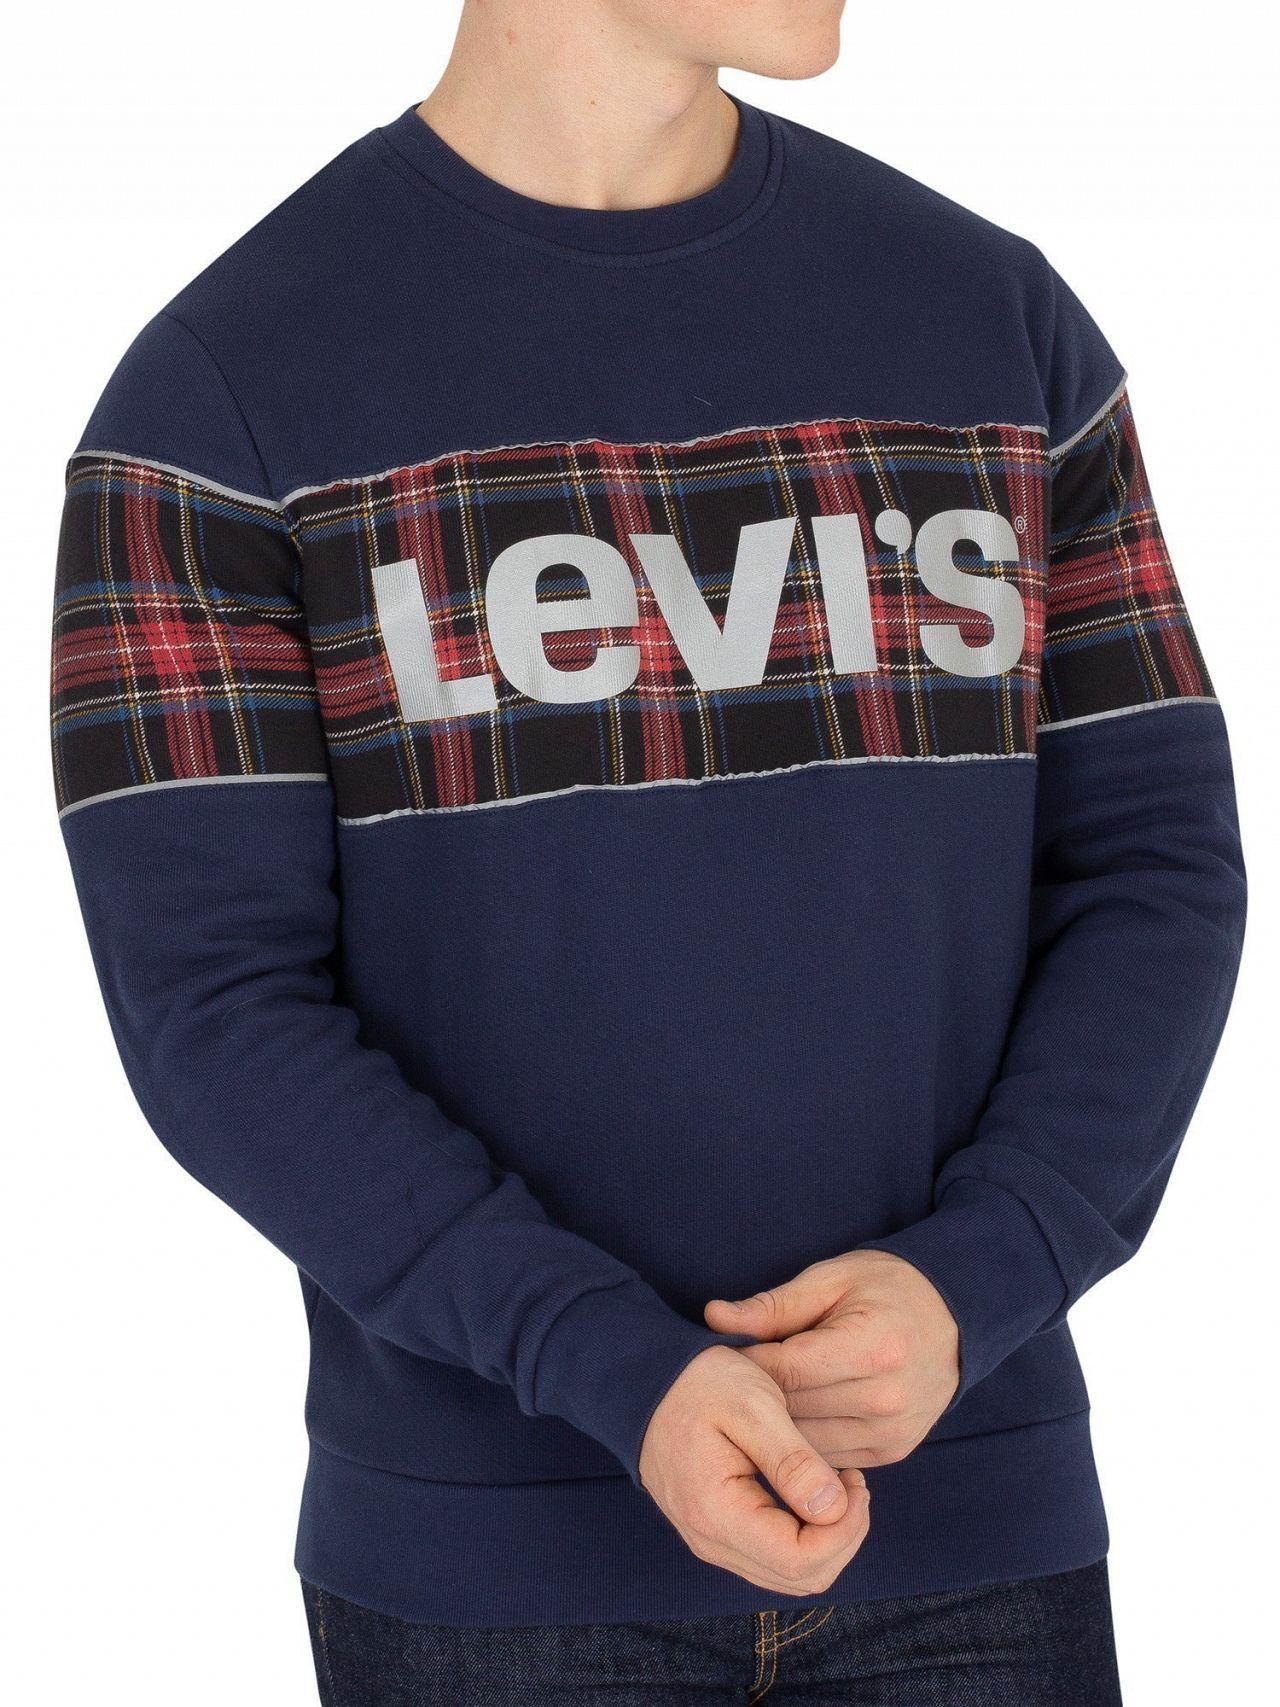 levis reflective sweatshirt